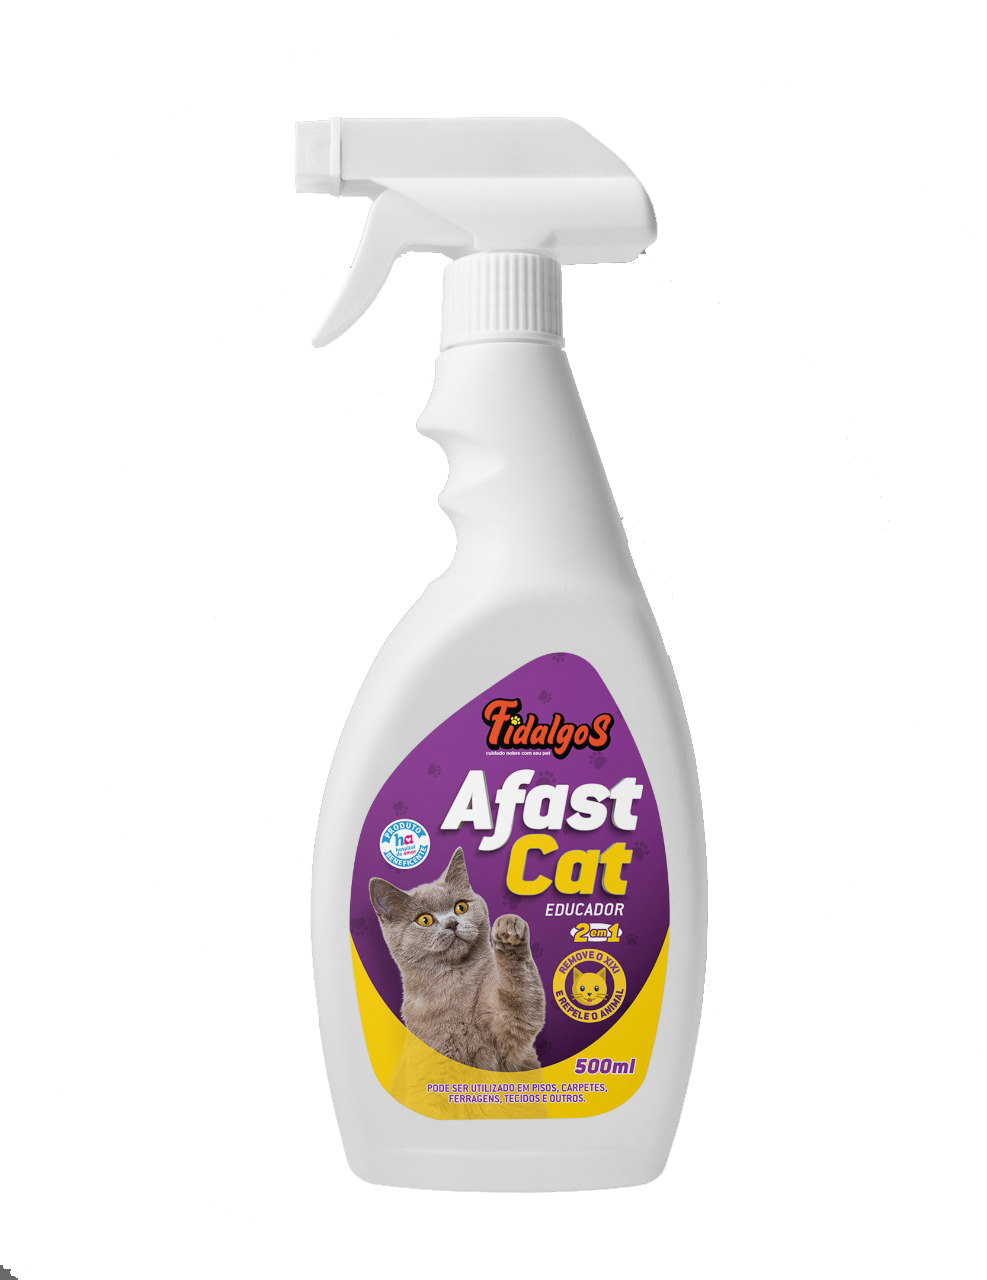 AFAST-CAT EDUCADOR – 500 ML